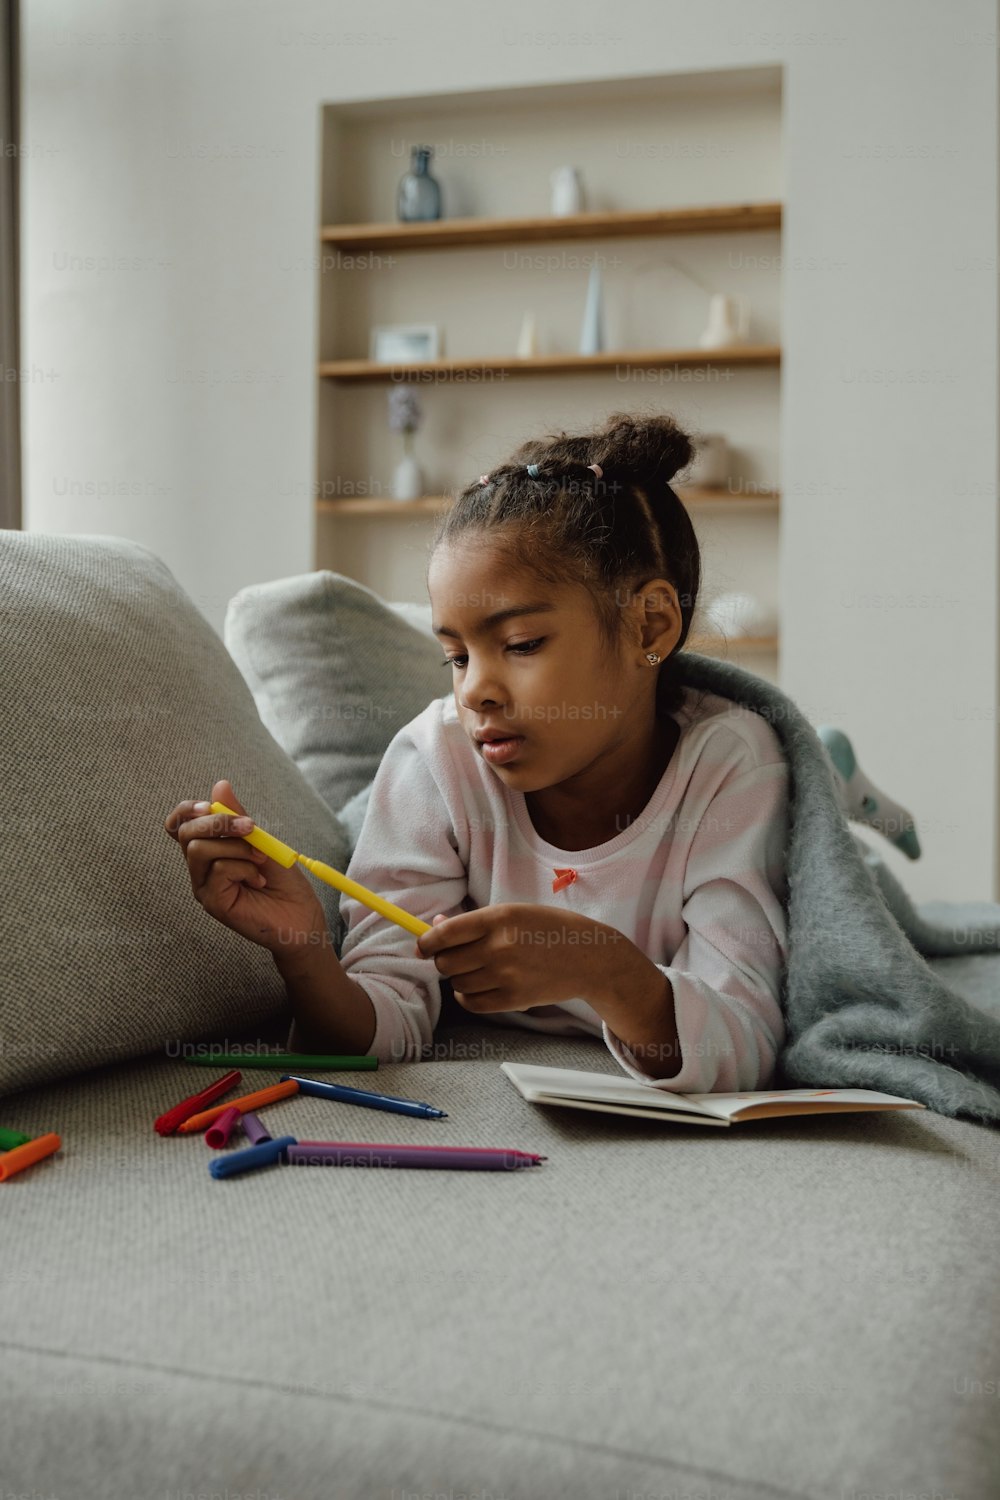 Ein kleines Mädchen, das mit einem Buch und Stiften auf einer Couch sitzt